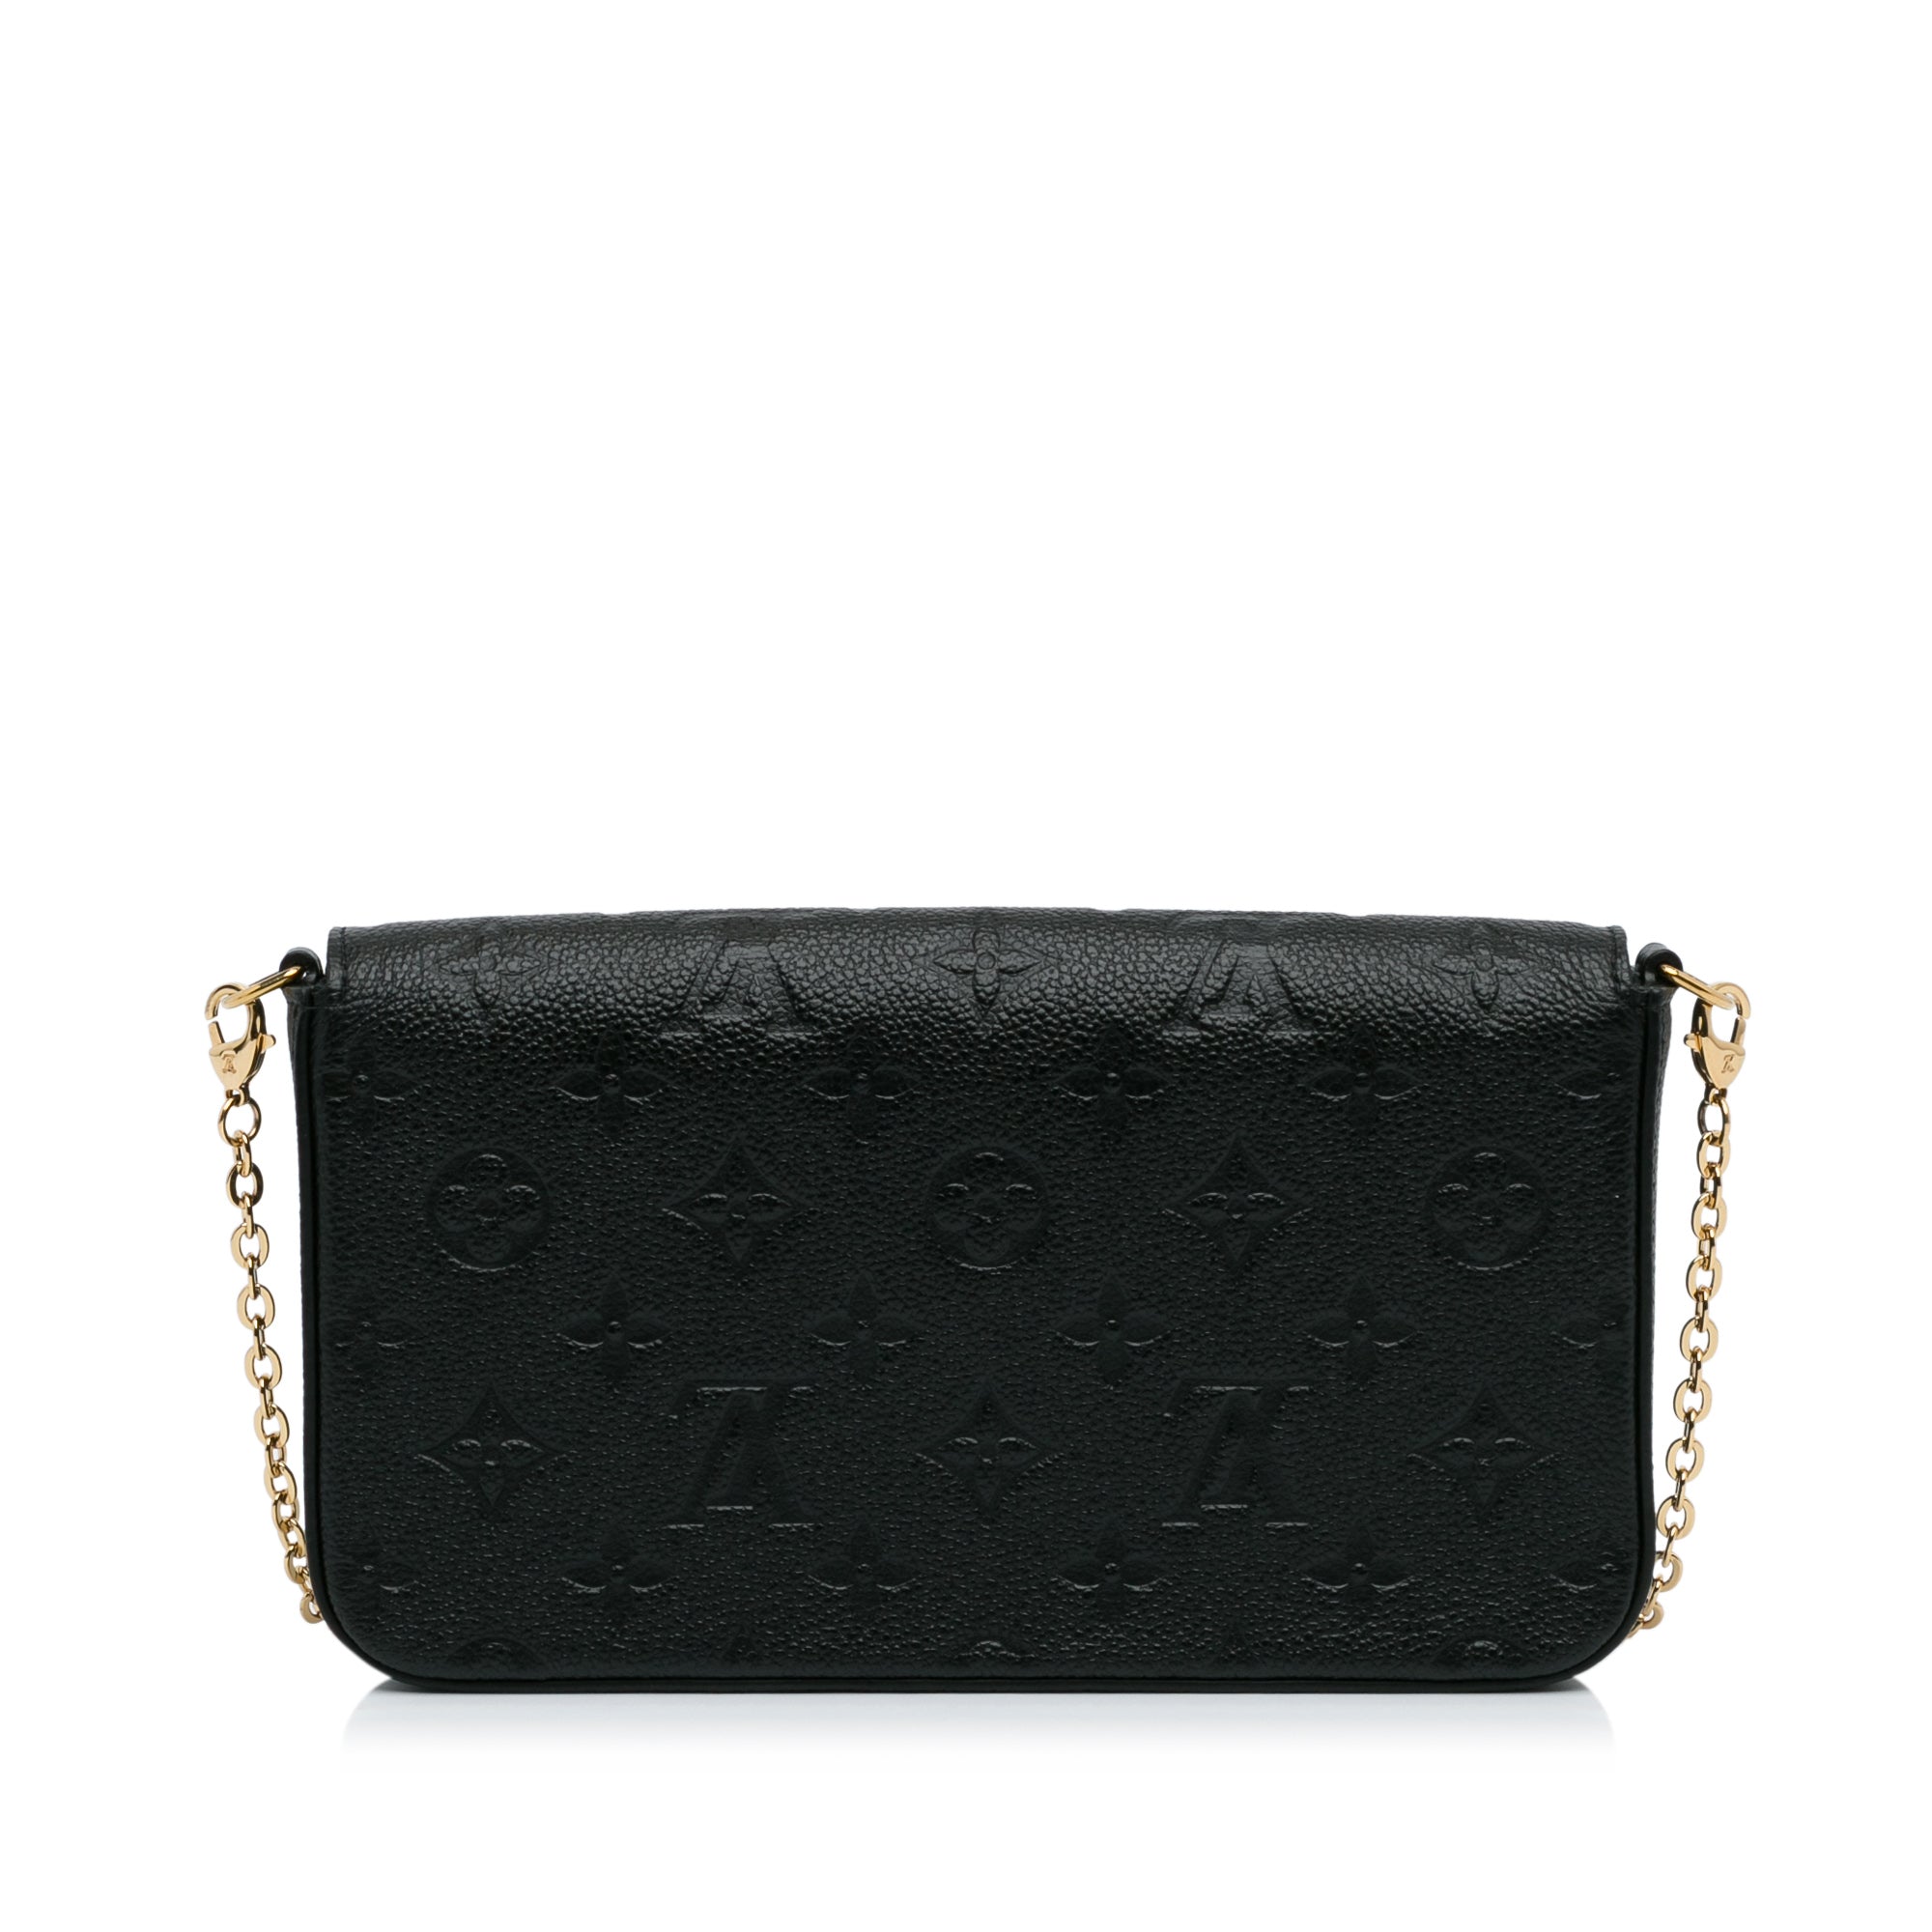 Pochette Felicie: Monogram or Black Empreinte Leather? : r/Louisvuitton